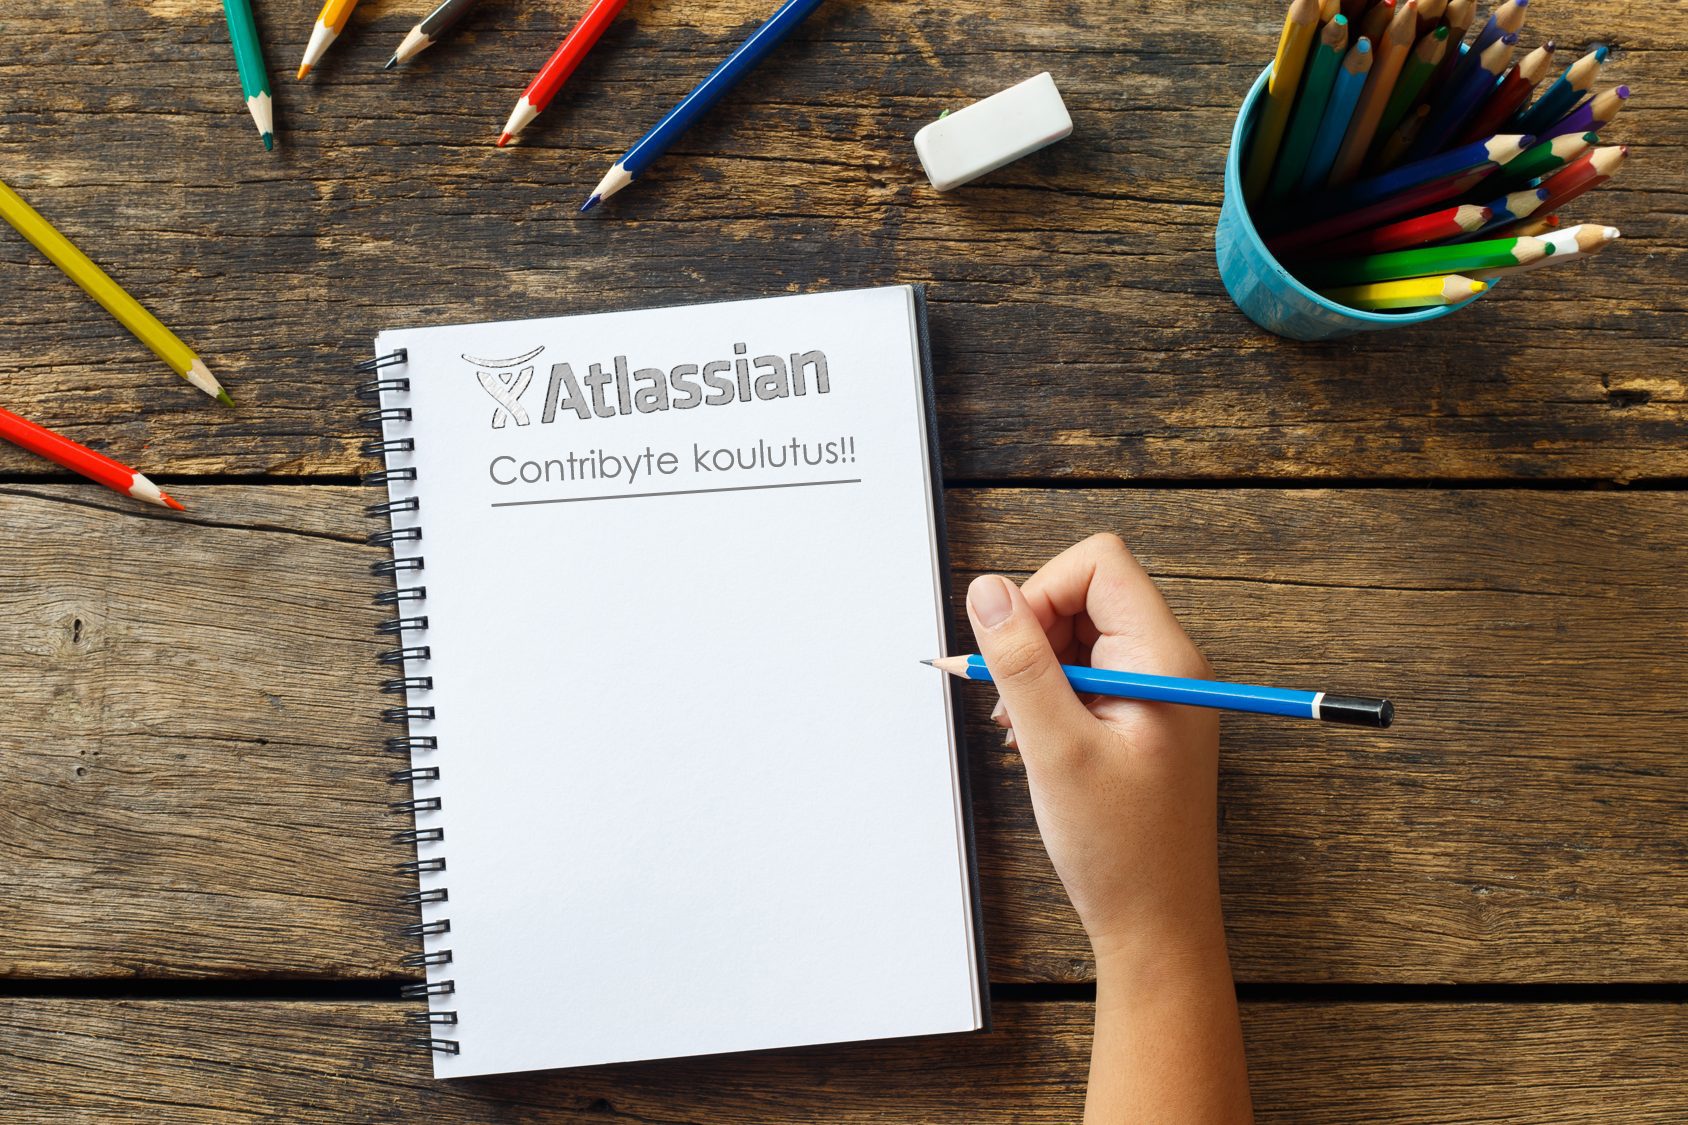 Sertifioituja Atlassian-koulutuksia ensimmäisenä Suomessa